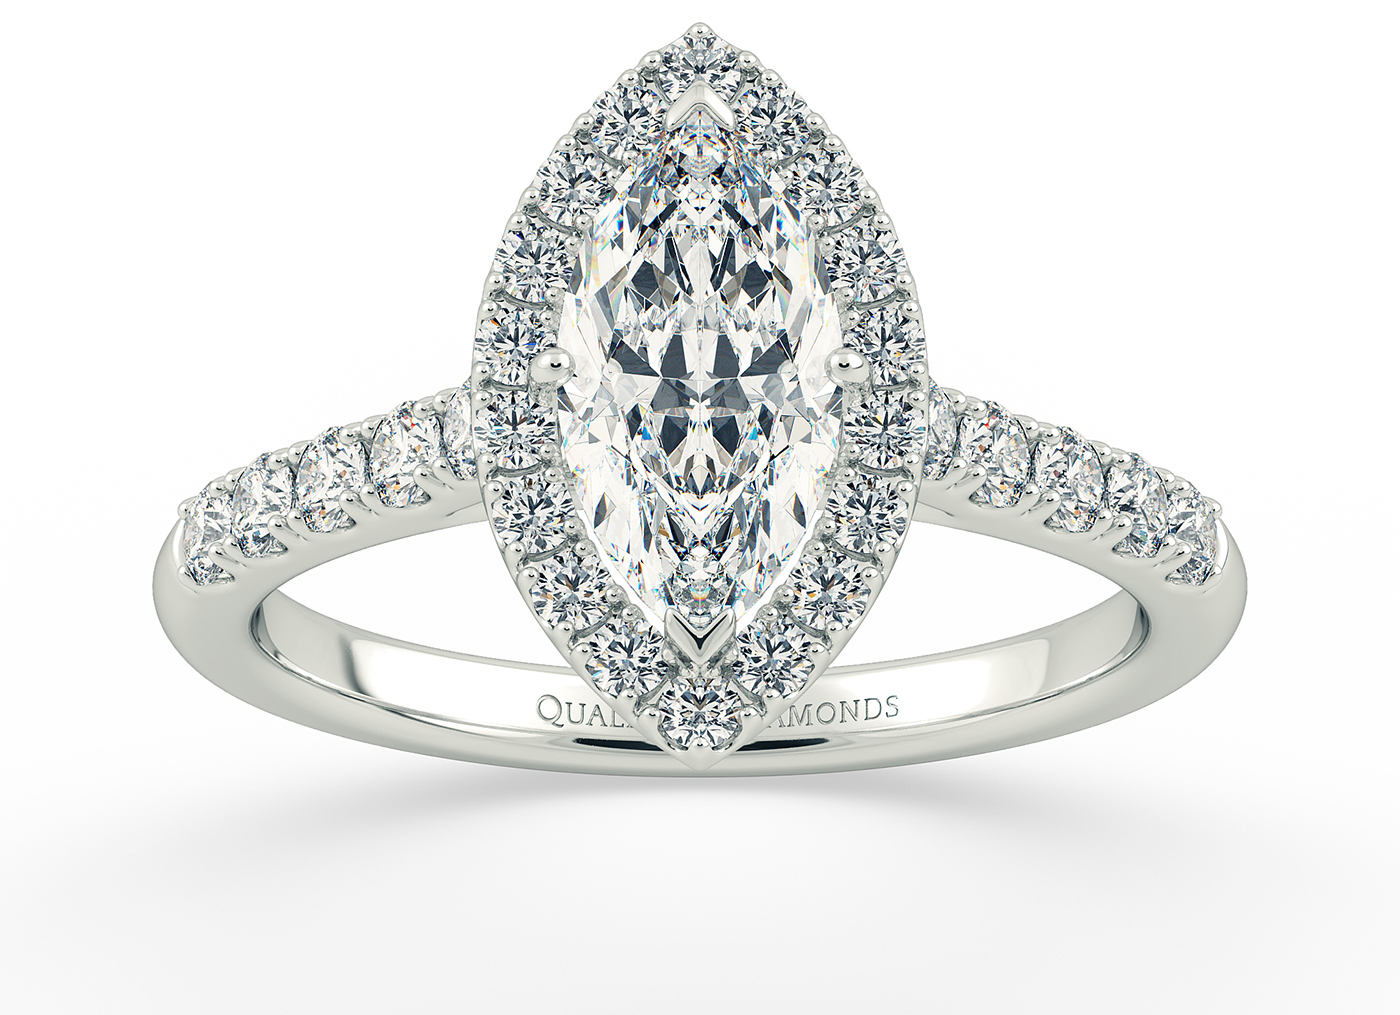 Half Carat Marquise Halo Diamond Ring in Platinum 950